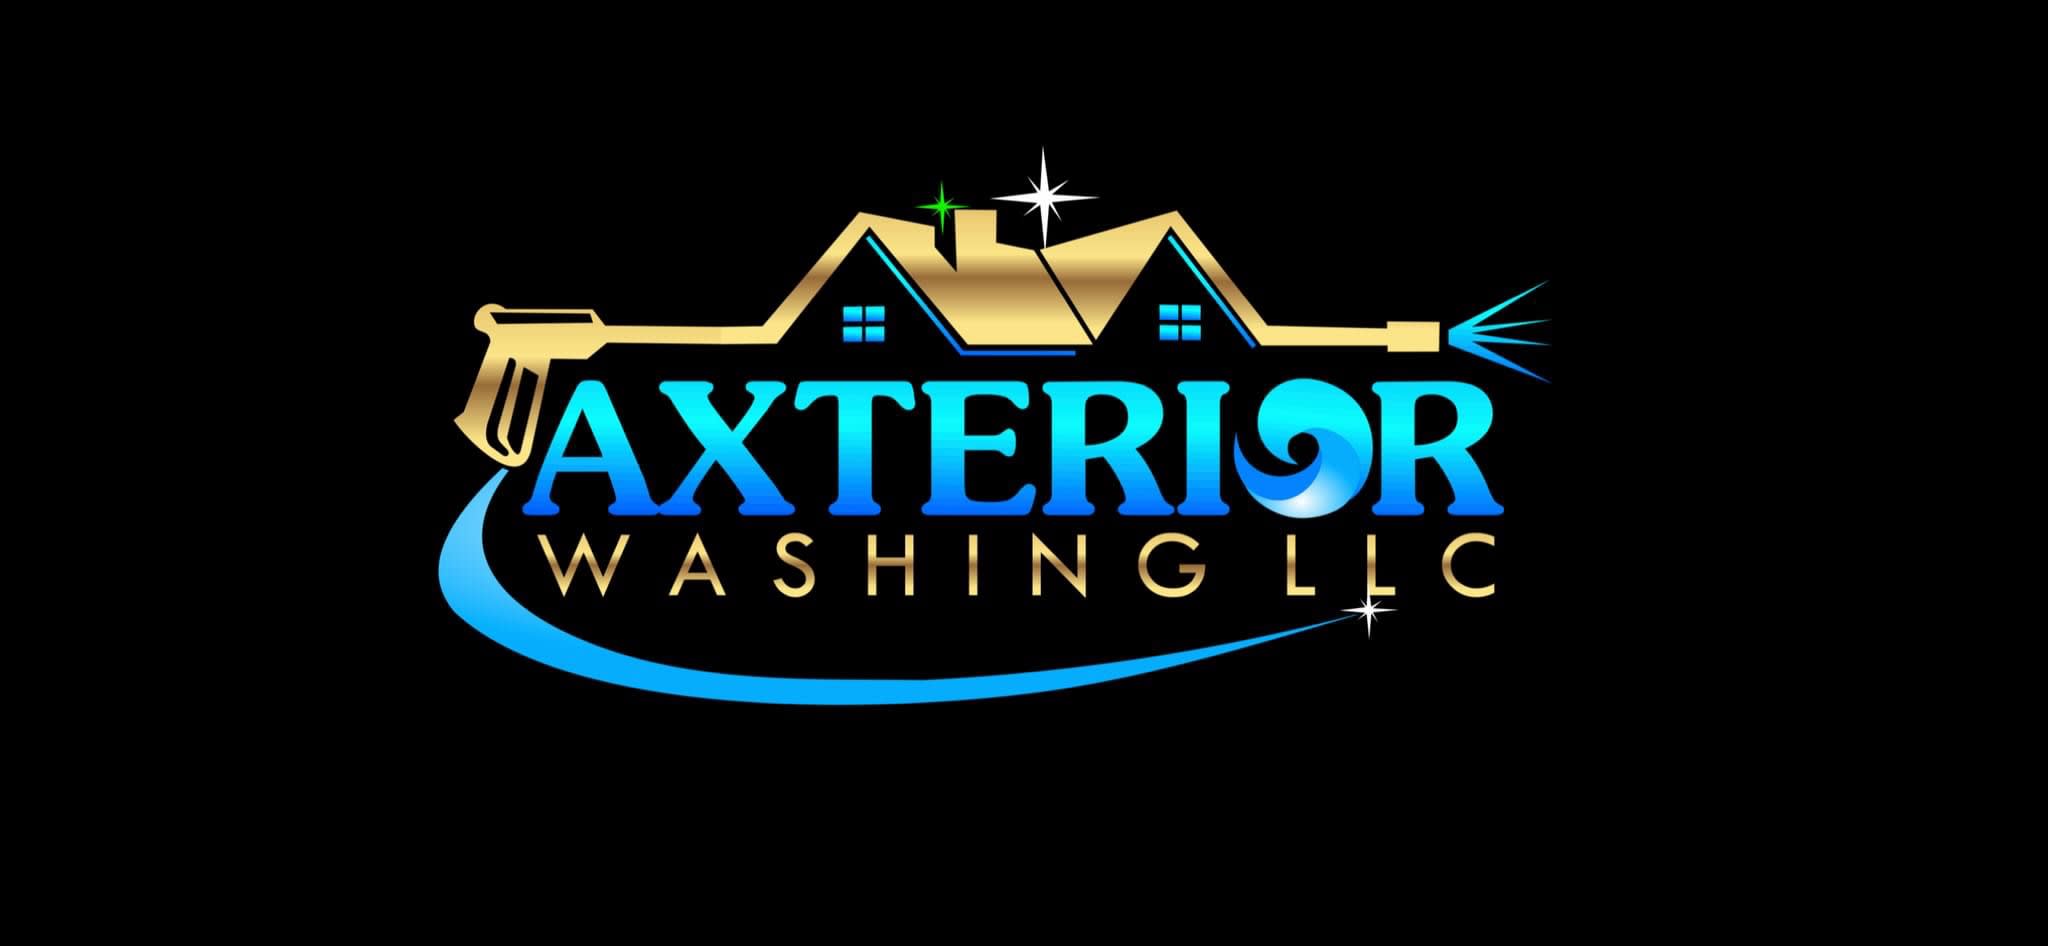 Axterior Washing LLC